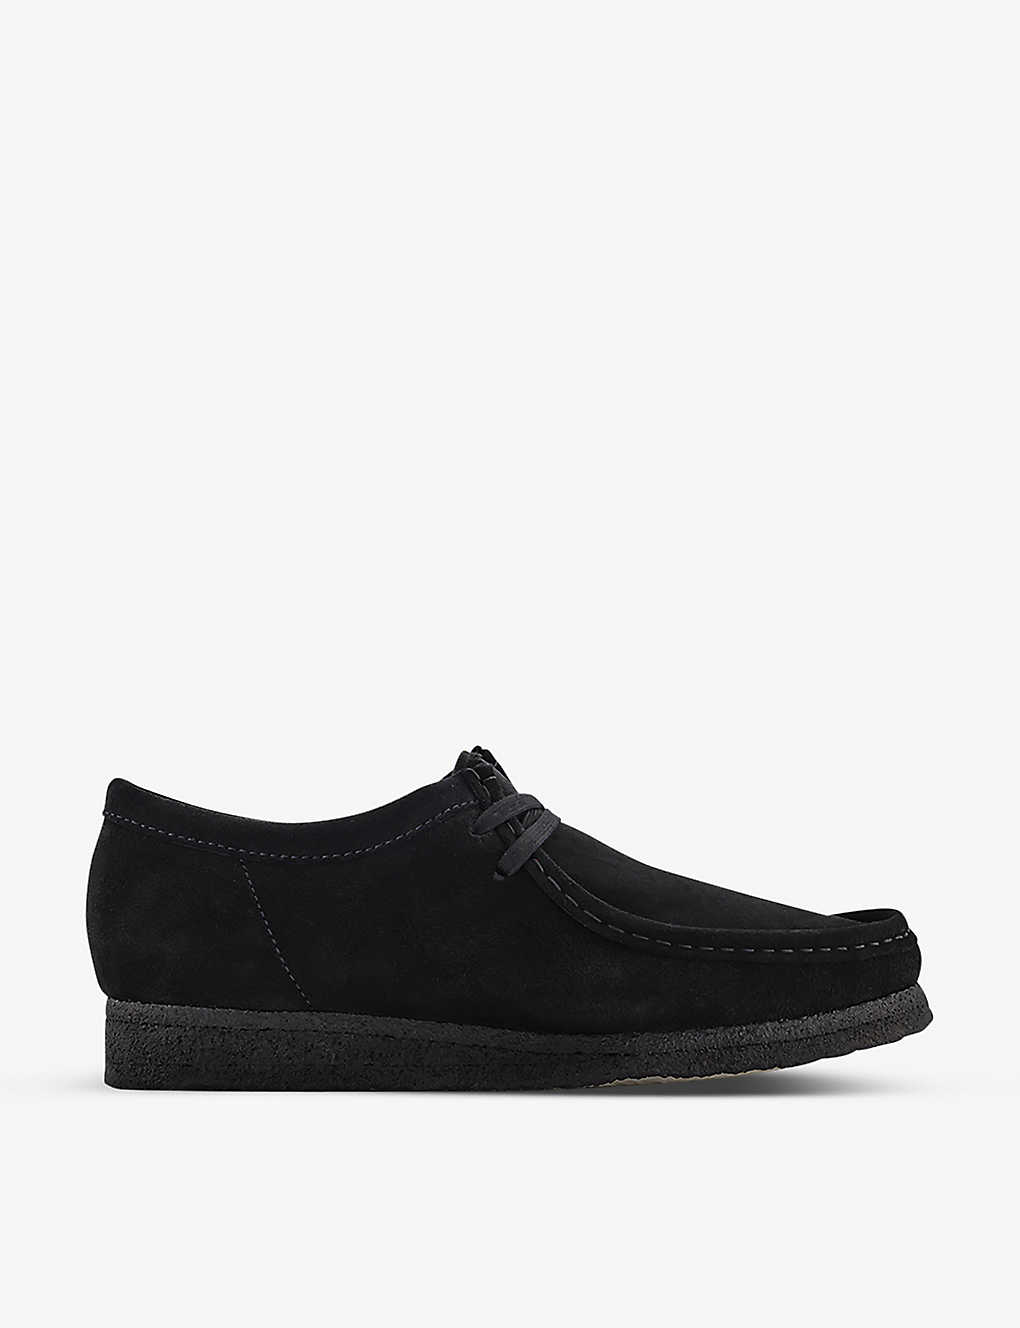 Shop Clarks Originals Wallabee Suede Shoes In Black Suede